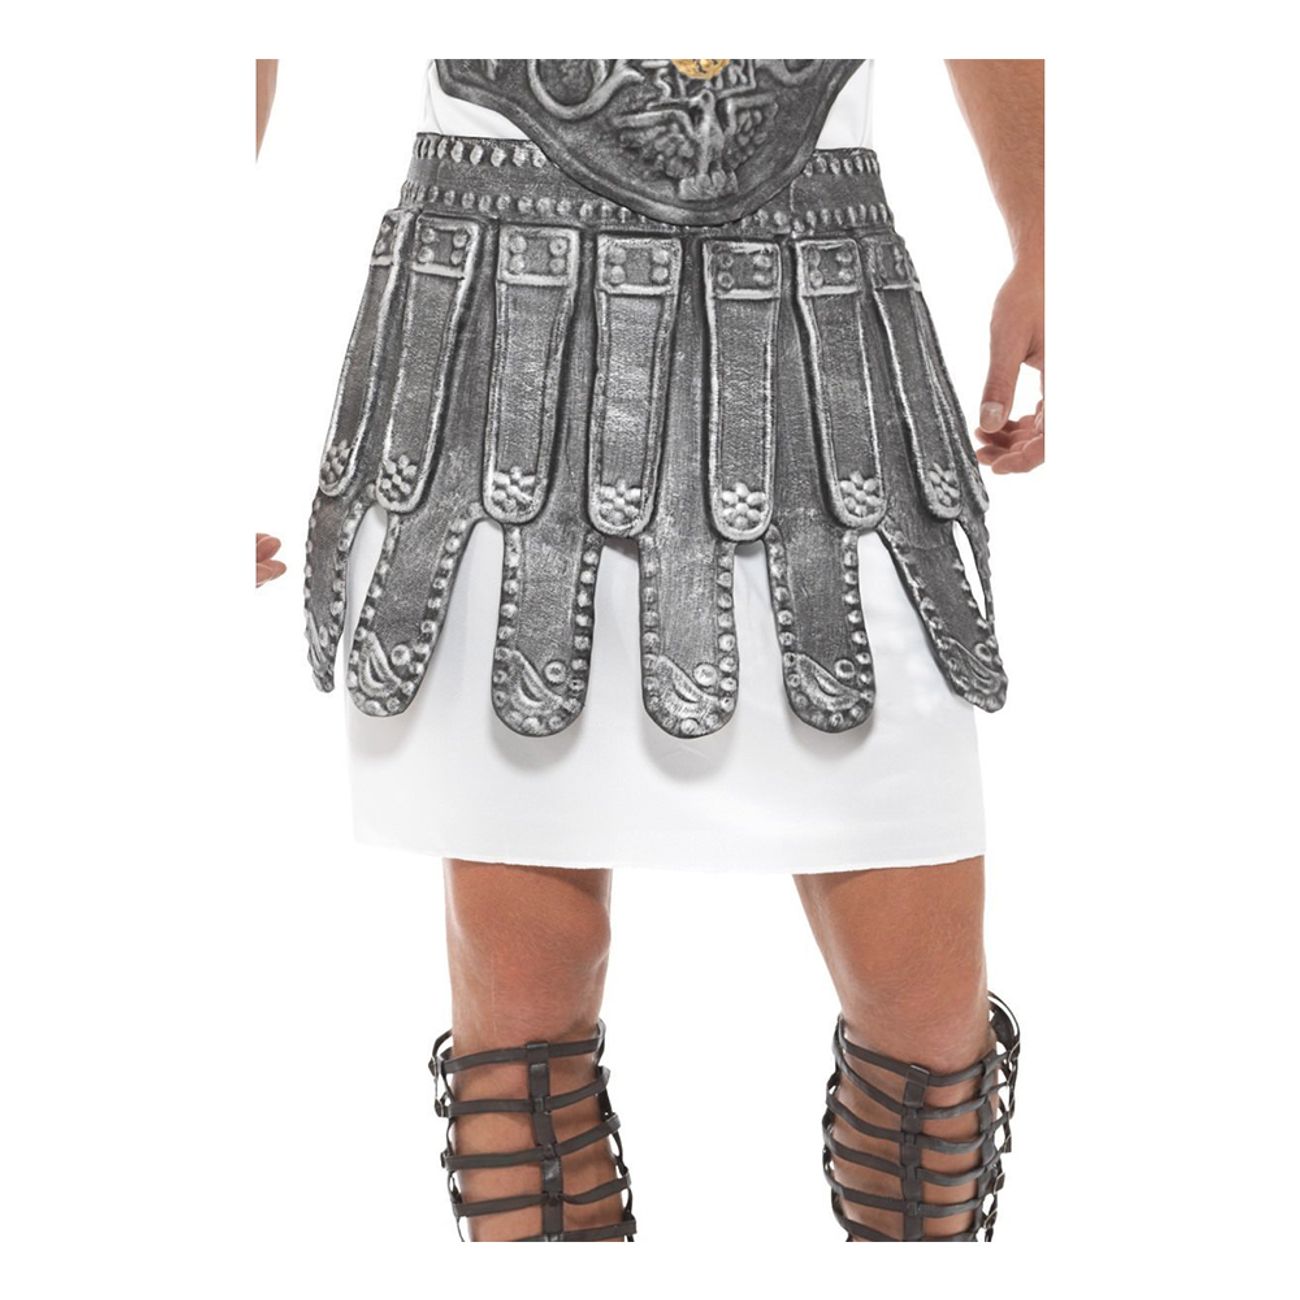 romersk-kjolrustning-1